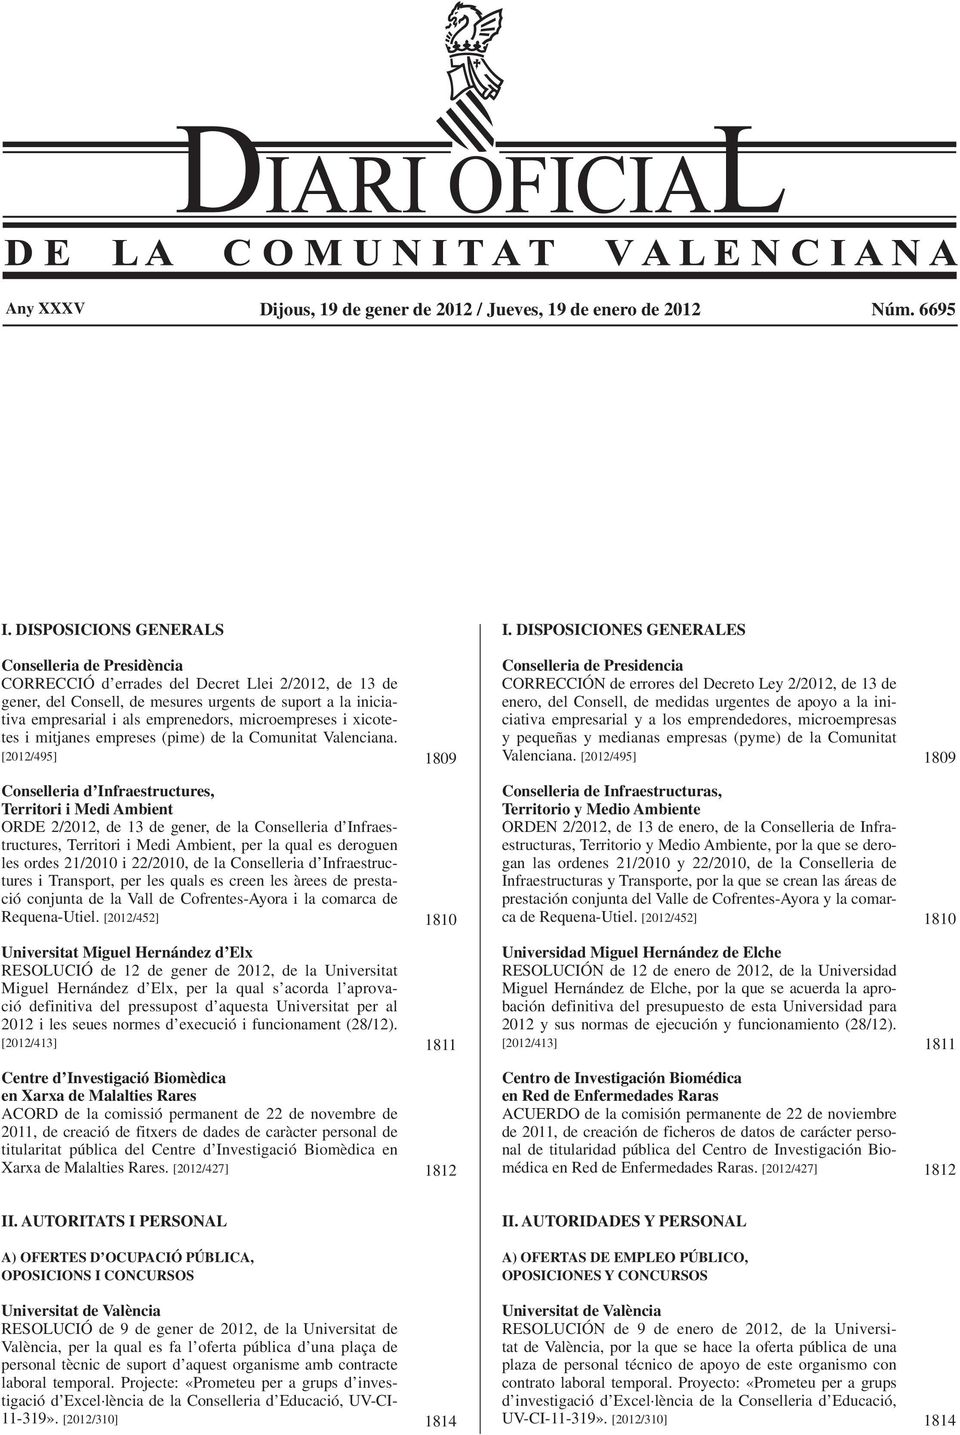 microempreses i xicotetes i mitjanes empreses (pime) de la Comunitat Valenciana.